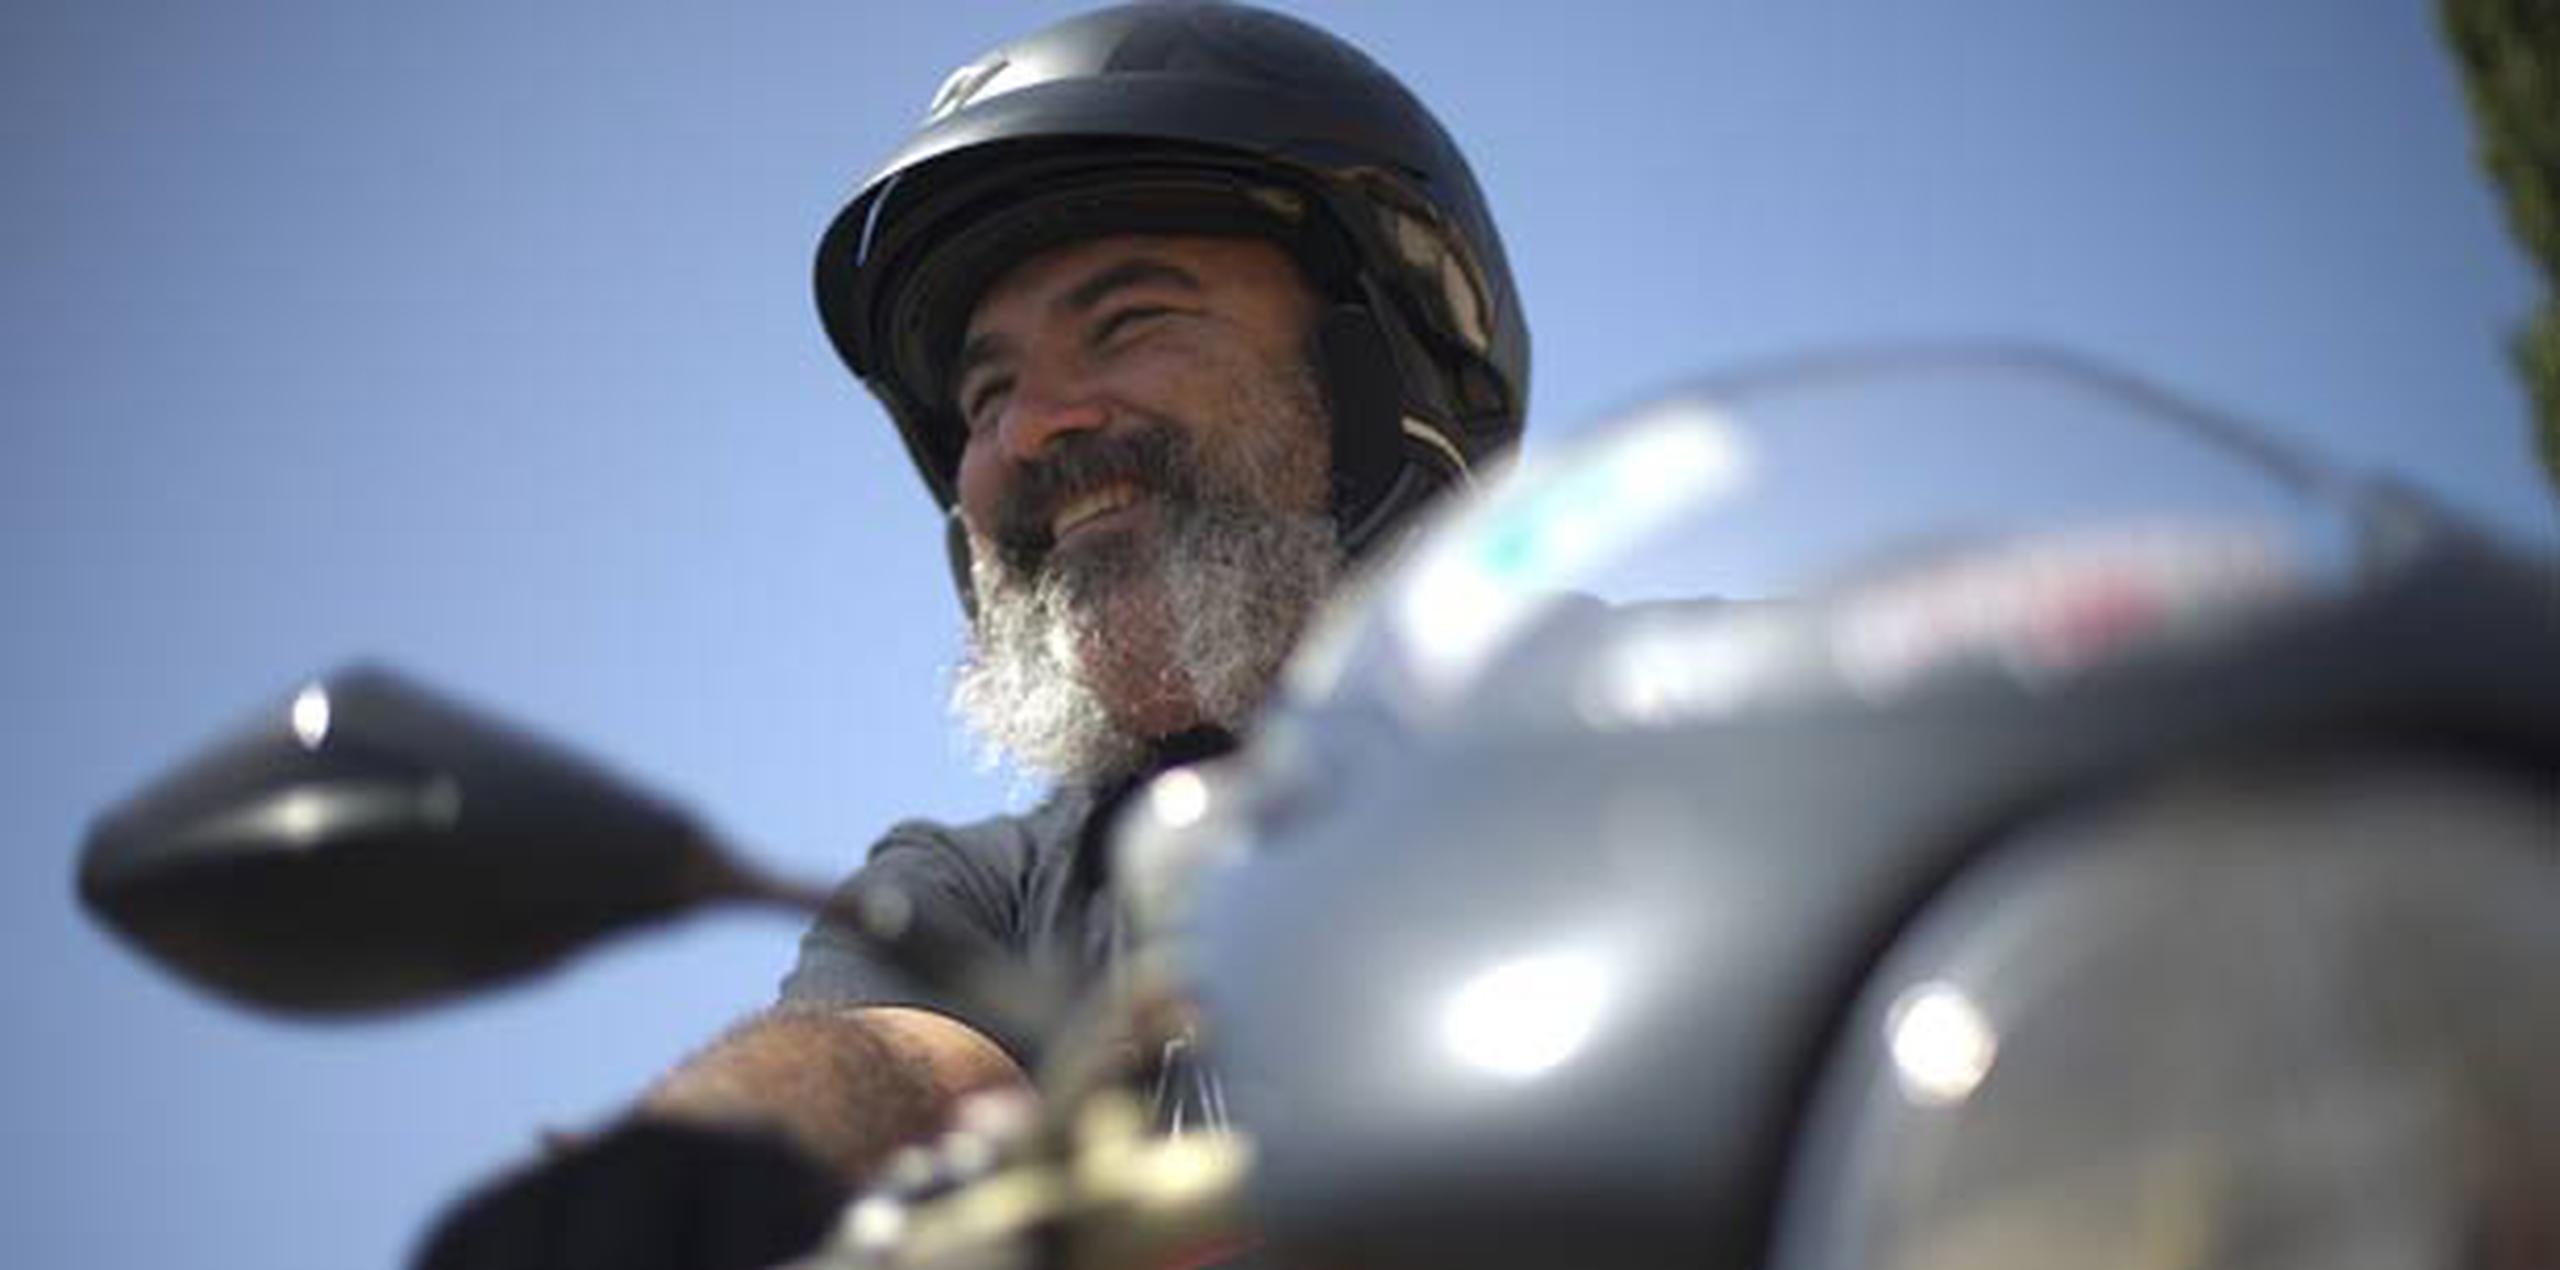 Ni los cuatro accidentes que ha sufrido Edwin Santiago lo bajan de su moto. (xavier.araujo@gfrmedia.com)